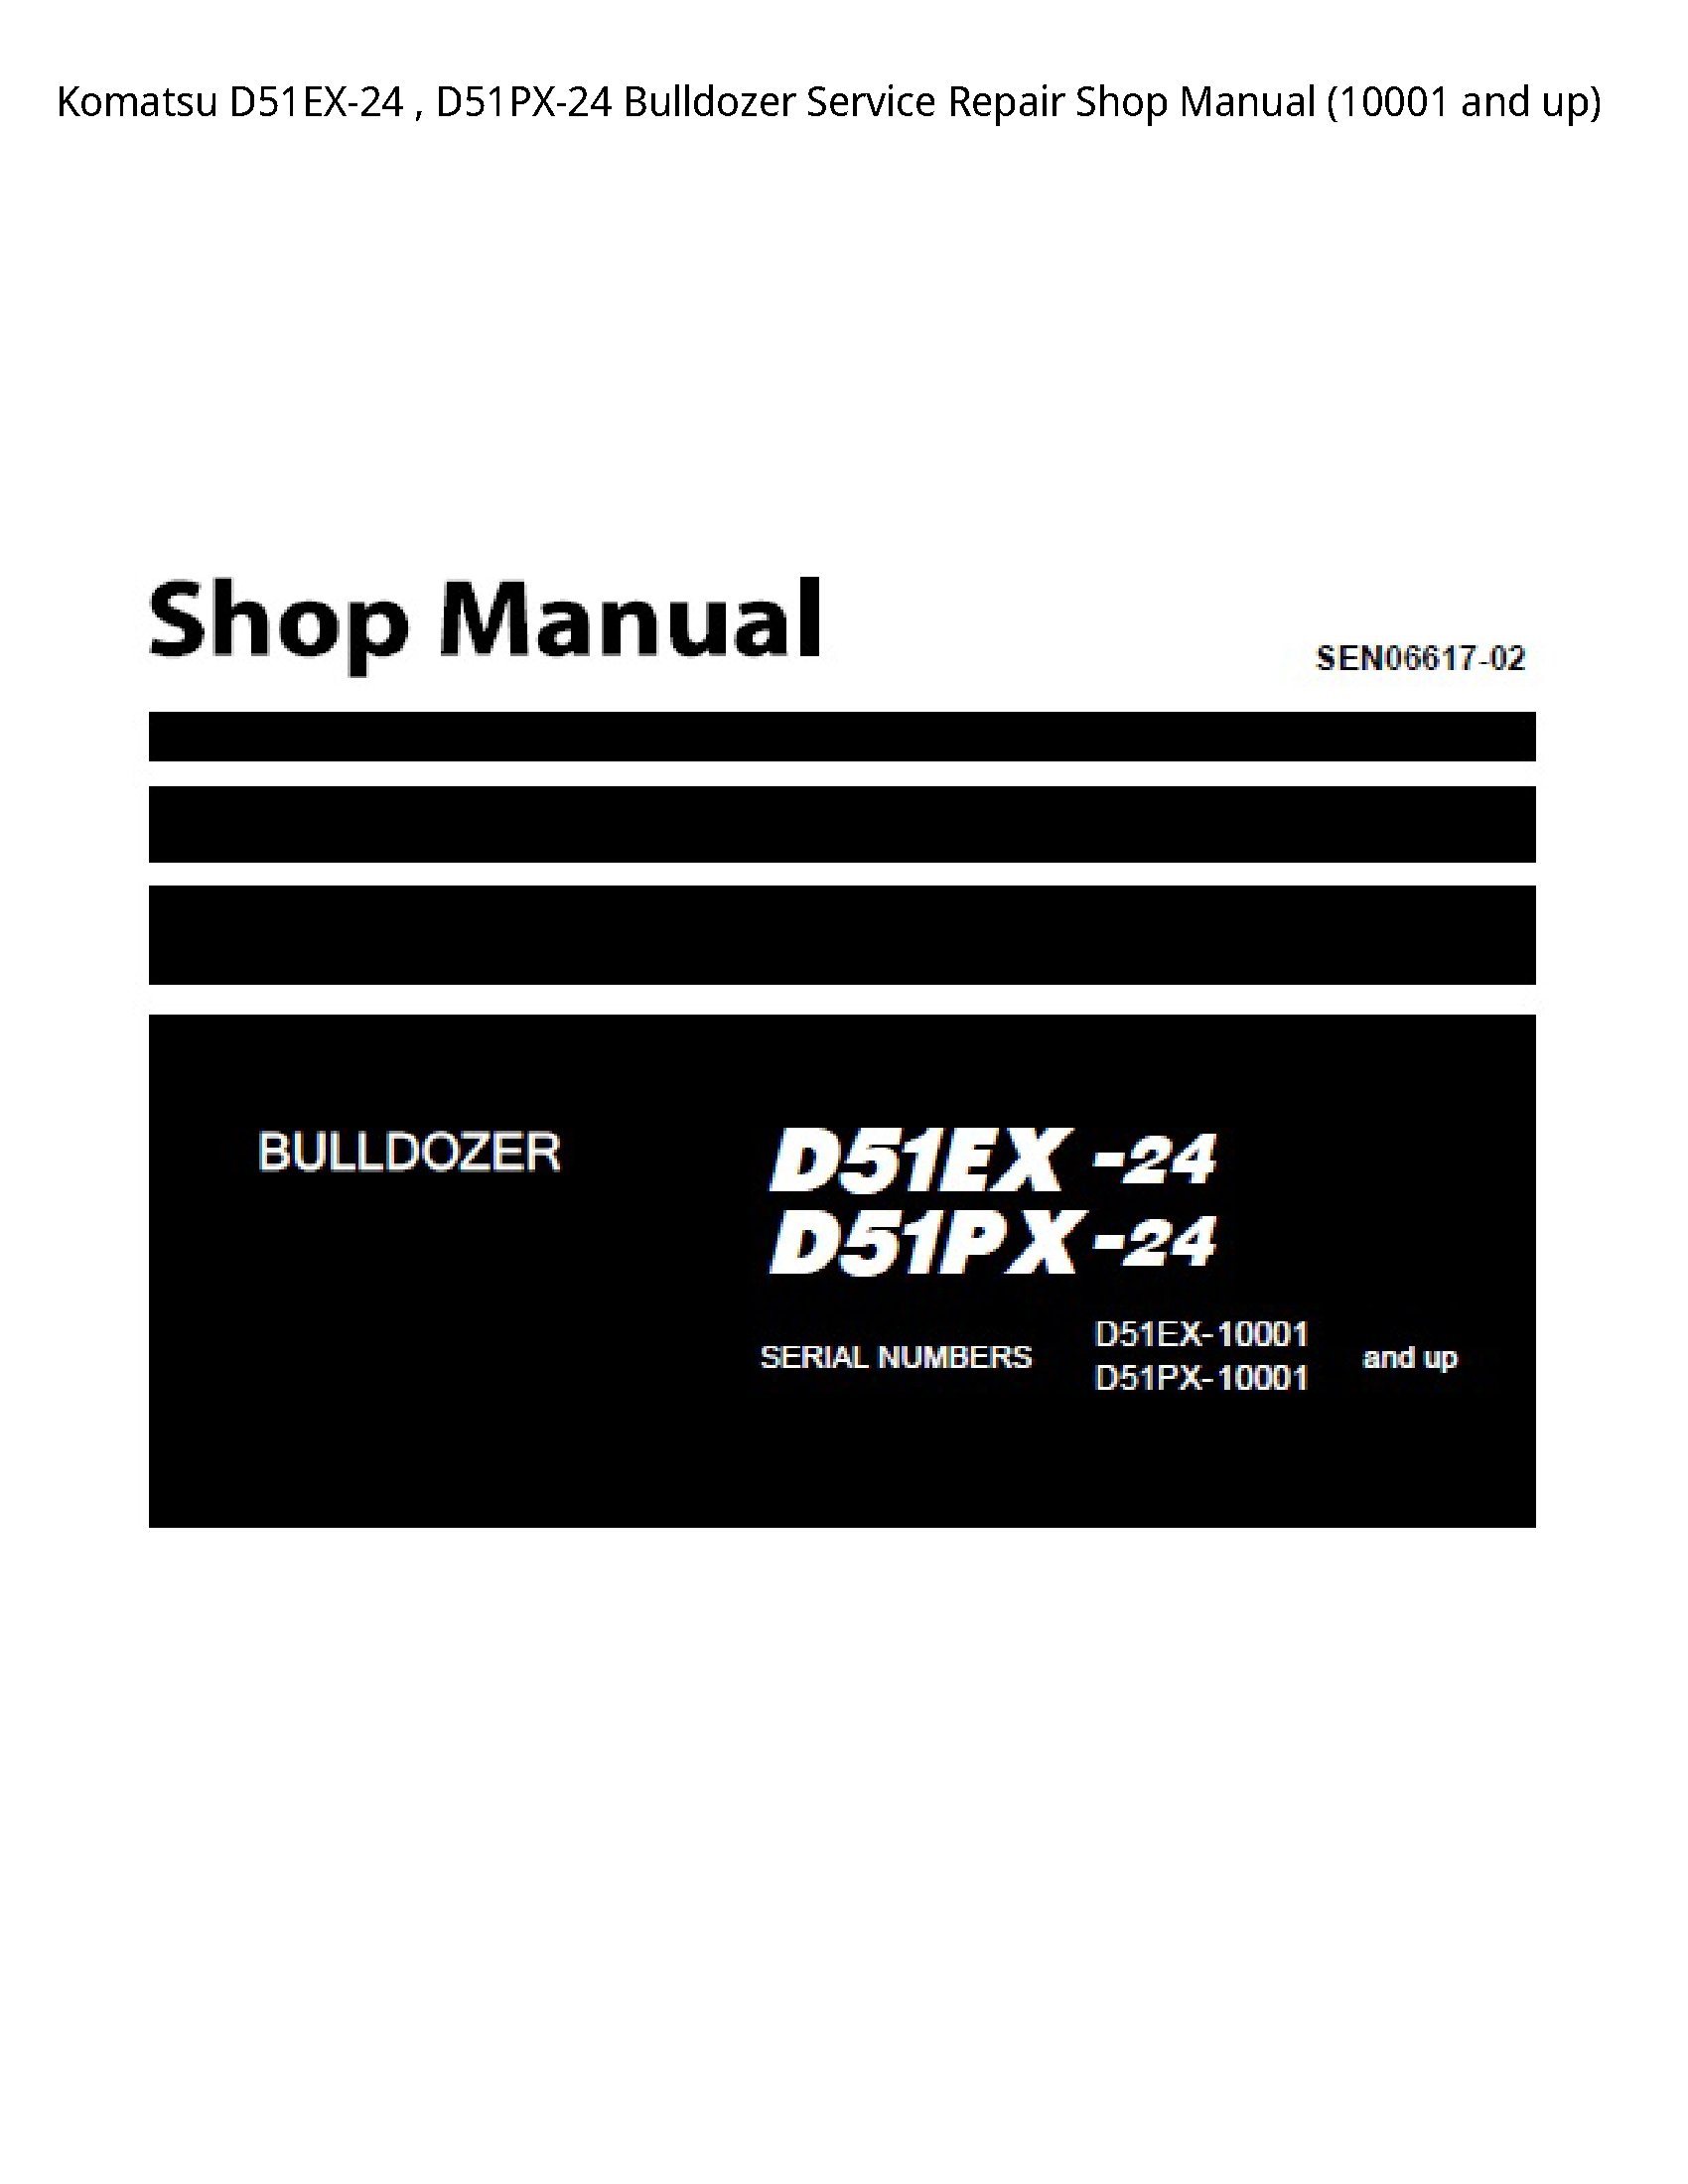 KOMATSU D51EX-24 Bulldozer manual